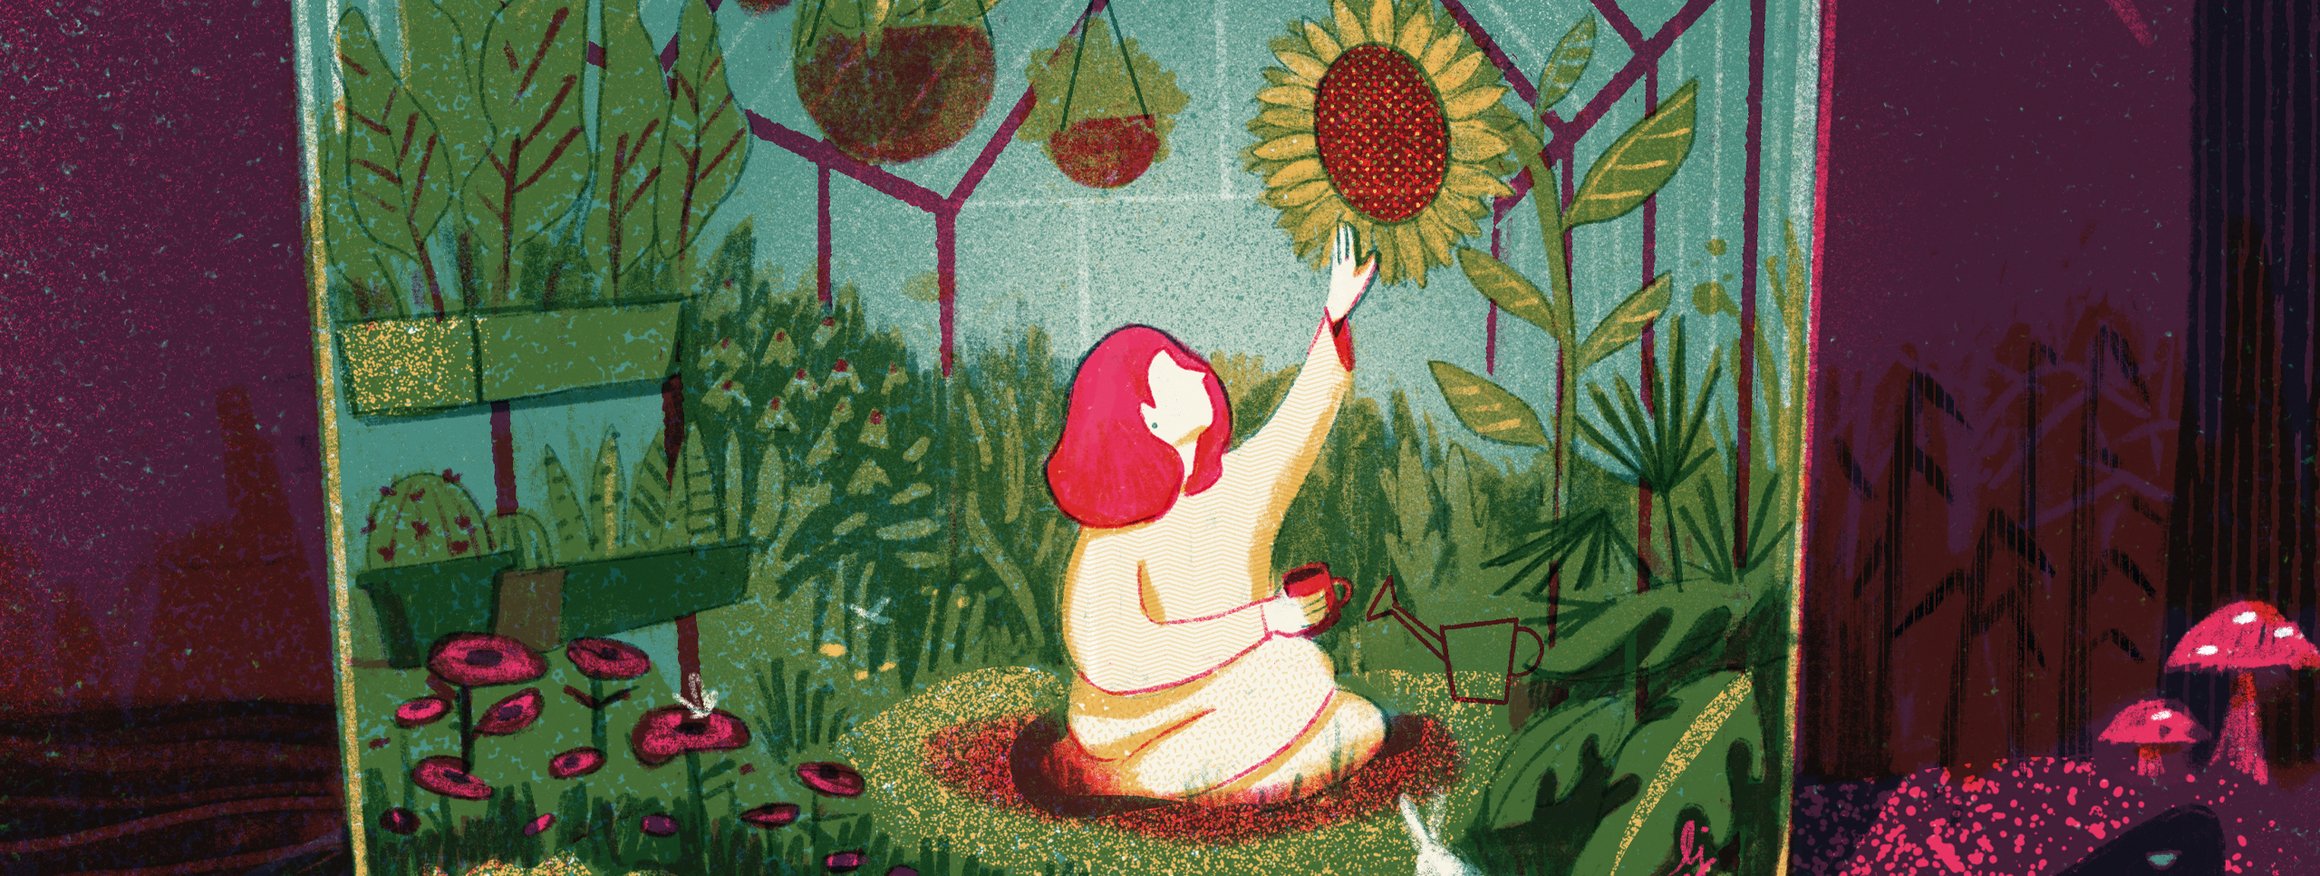 Die Illustration zeigt eine rothaarige Frau, die in einem durchsichtigen Gewächshaus sitzt, umgeben von Pflanzen, darum ist ebenfalls Natur